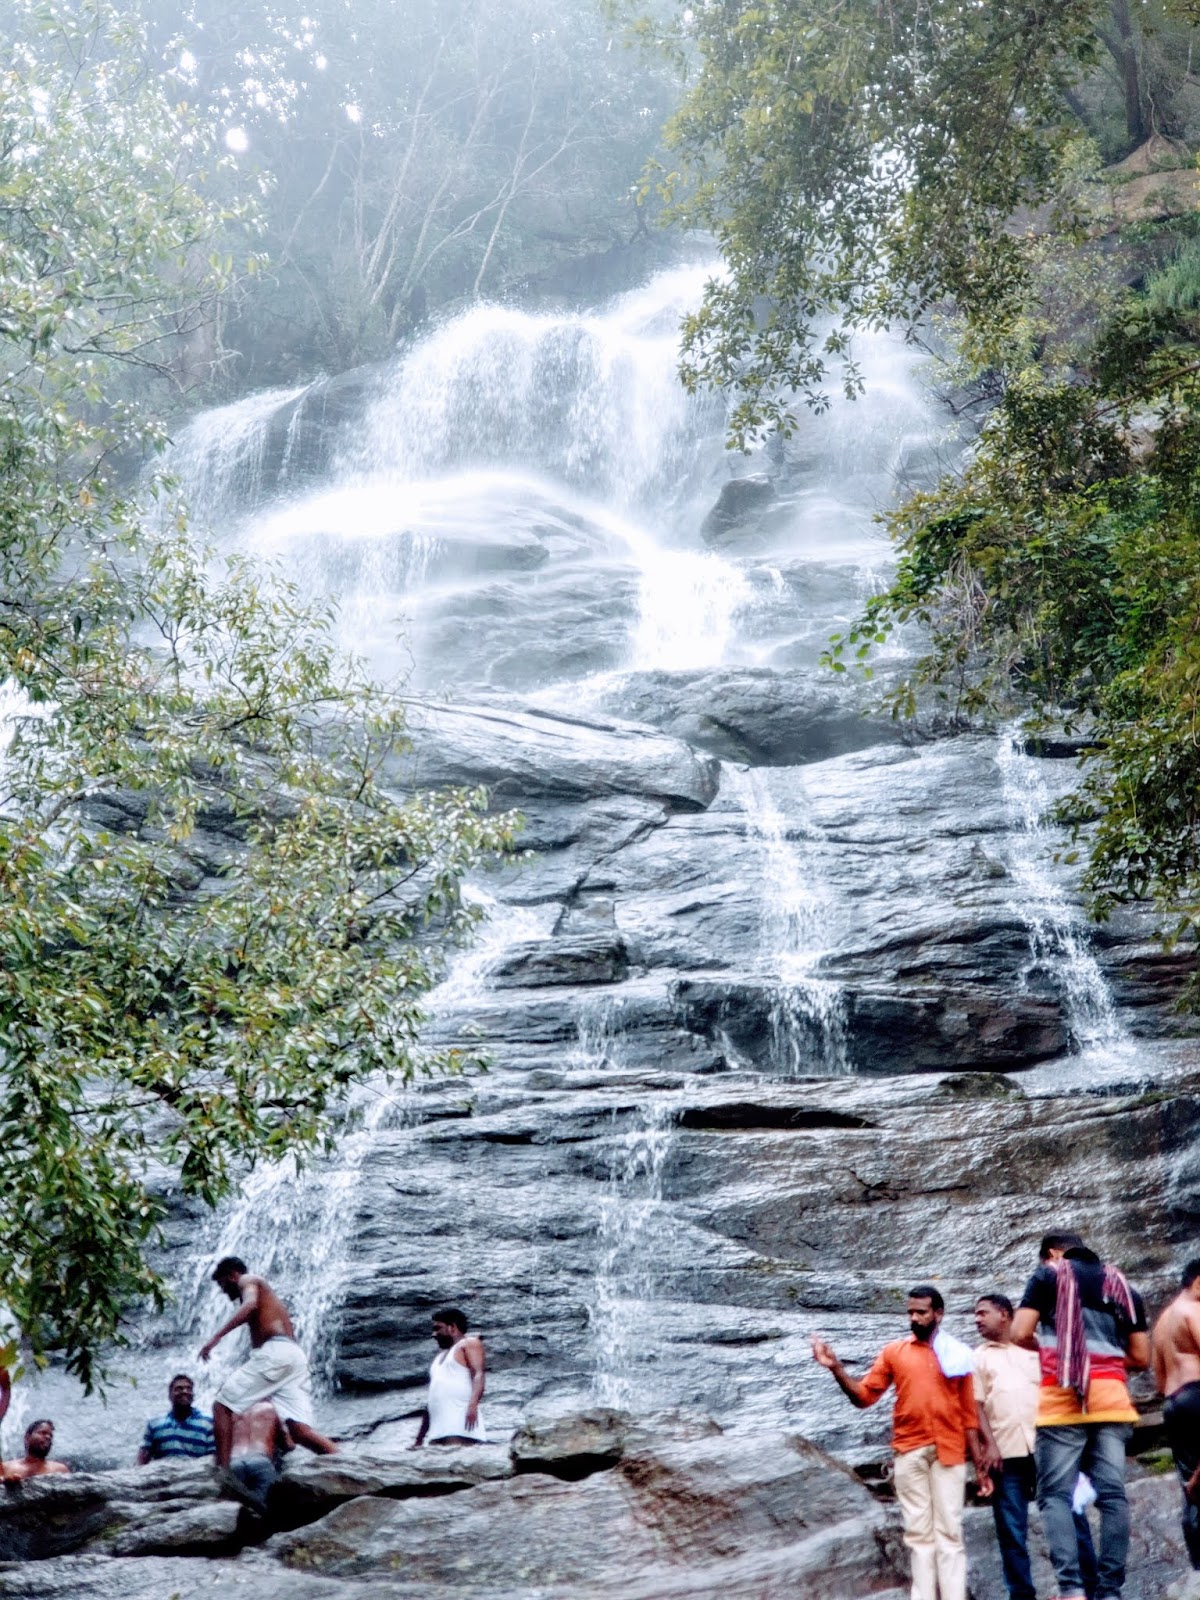 yercaud tourist places in tamil